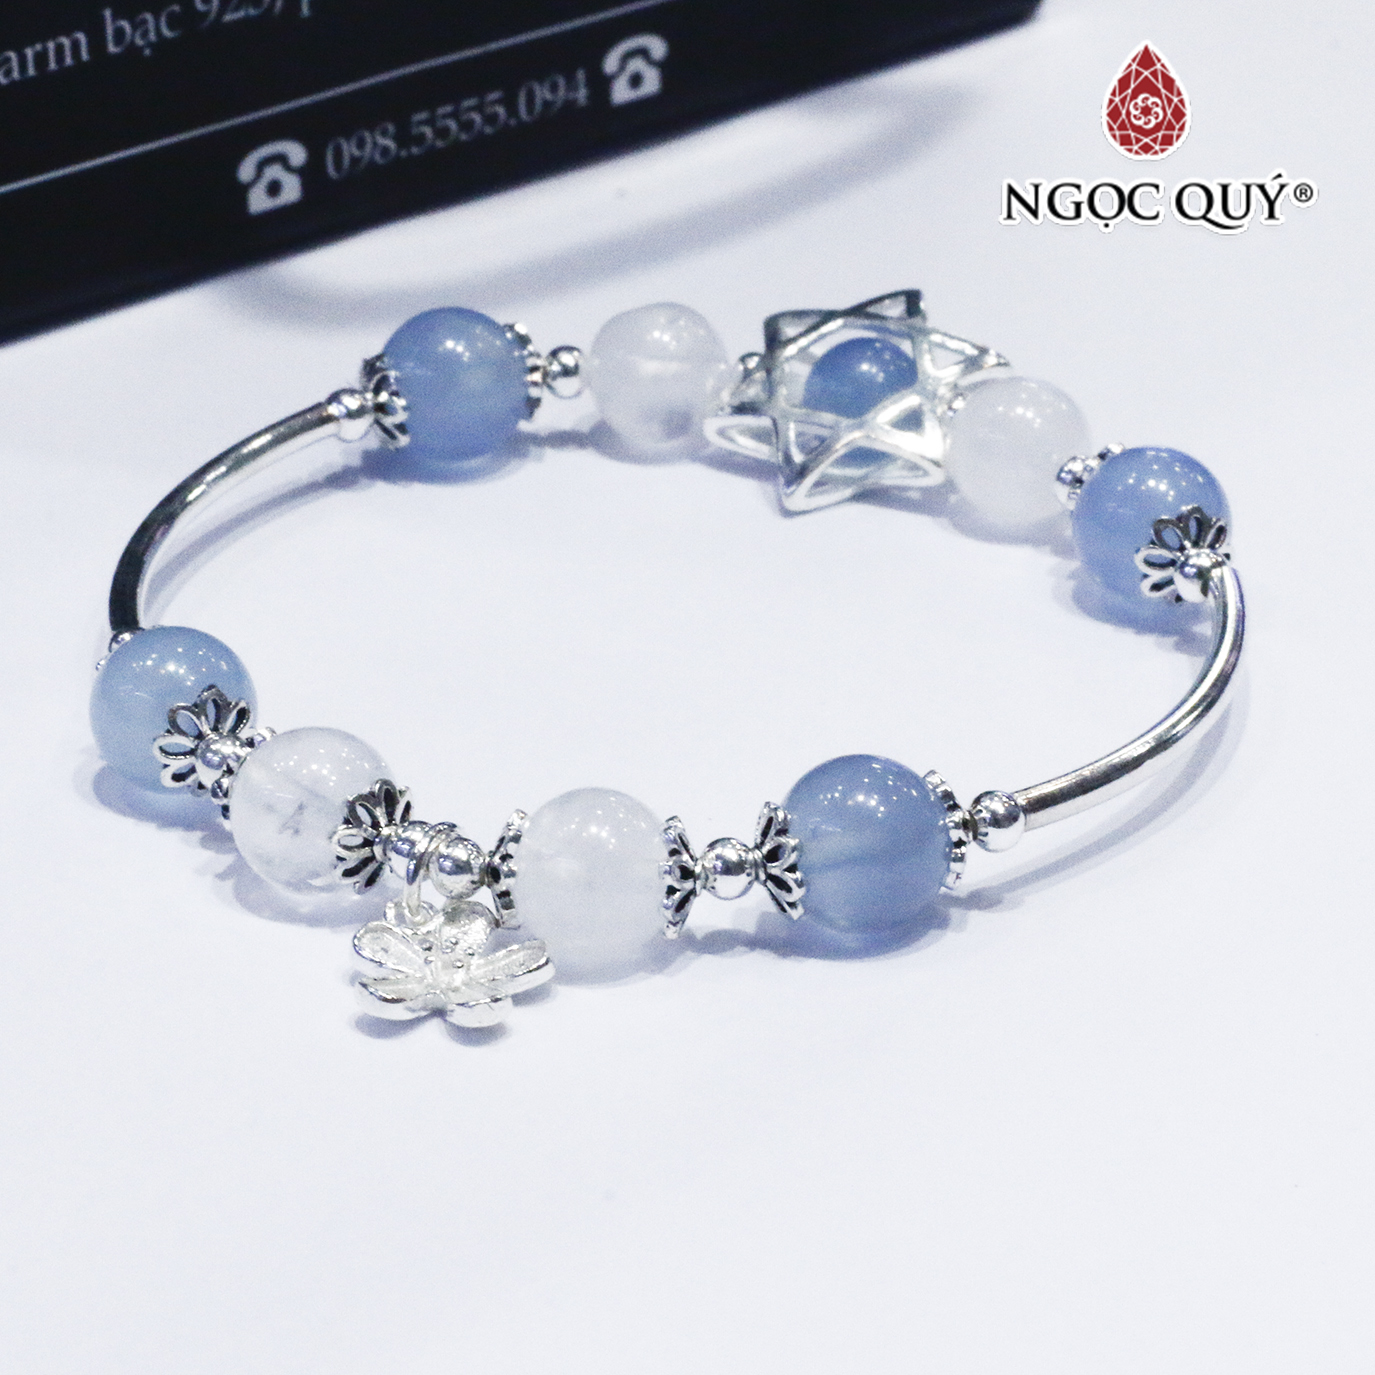 Vòng thạch anh ưu linh trắng phối aquamarine charm bạc - Ngọc Quý Gemstones